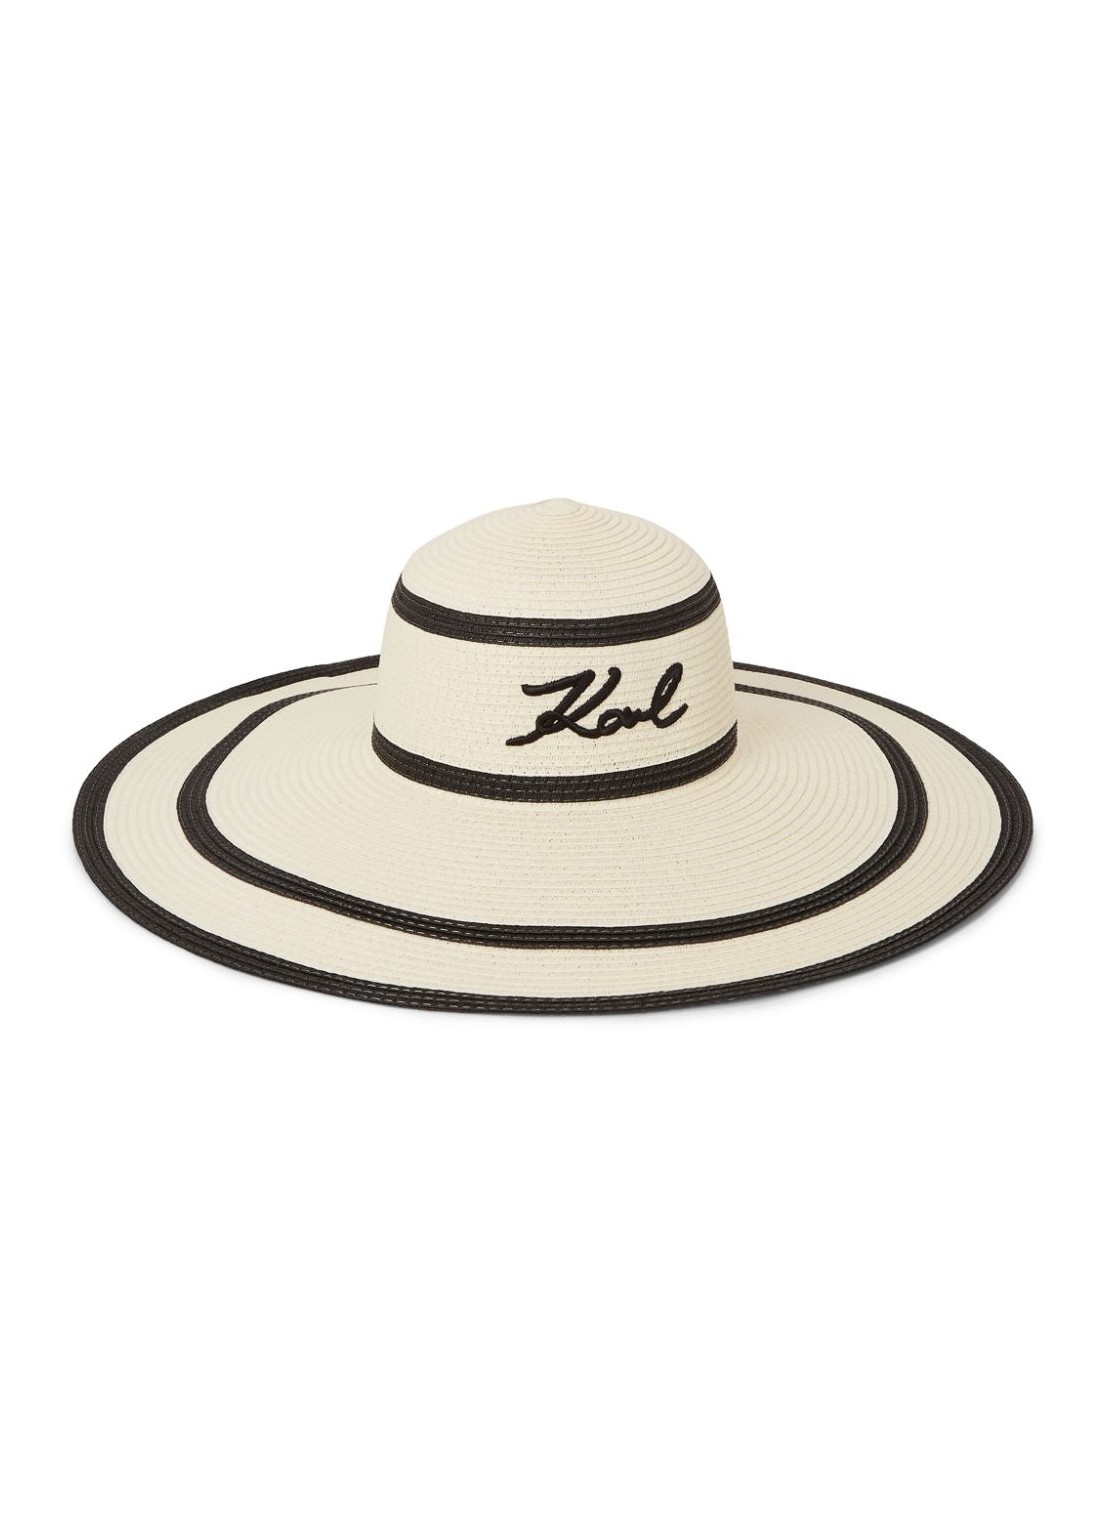 Gorras karl lagerfeld cap womank/signature stripe summer hat - 241w3416 a999 talla T/U
 